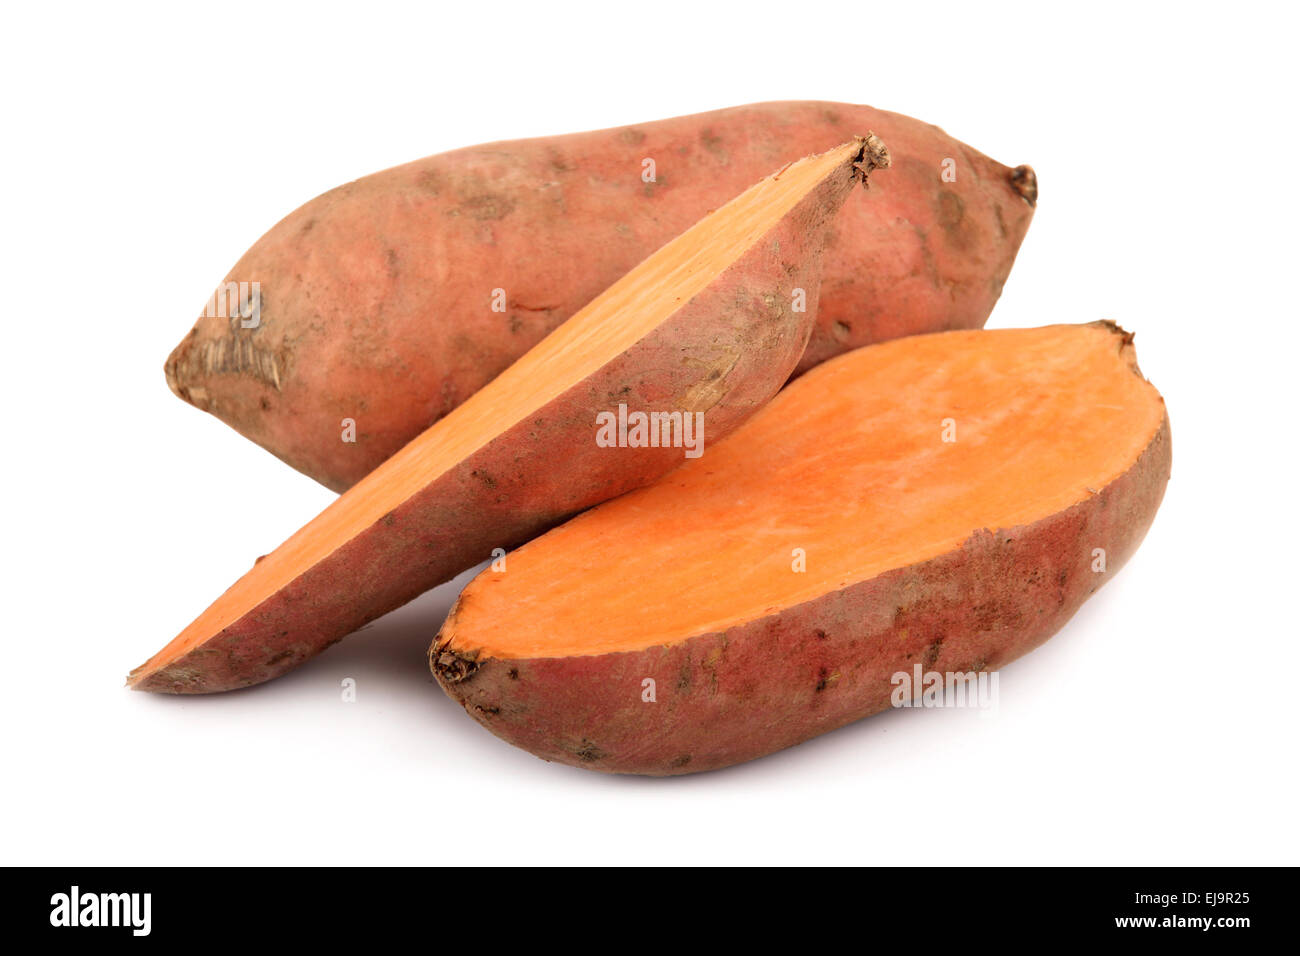 Sweet potato yam isolated over white background Stock Photo